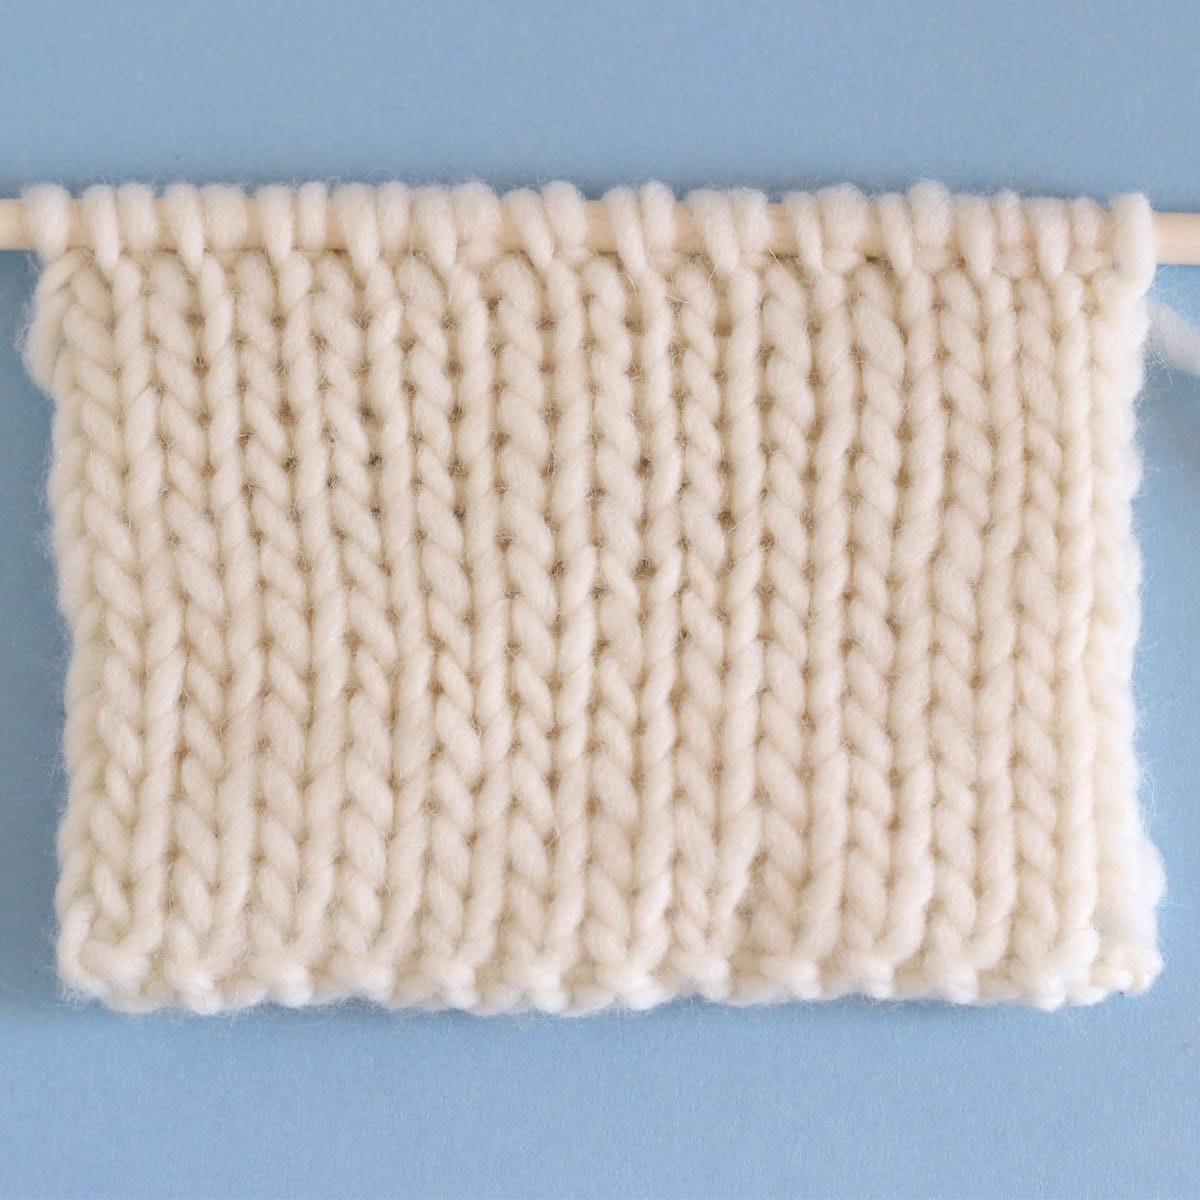 Slip Stitch Knitting Patterns - Knitfarious